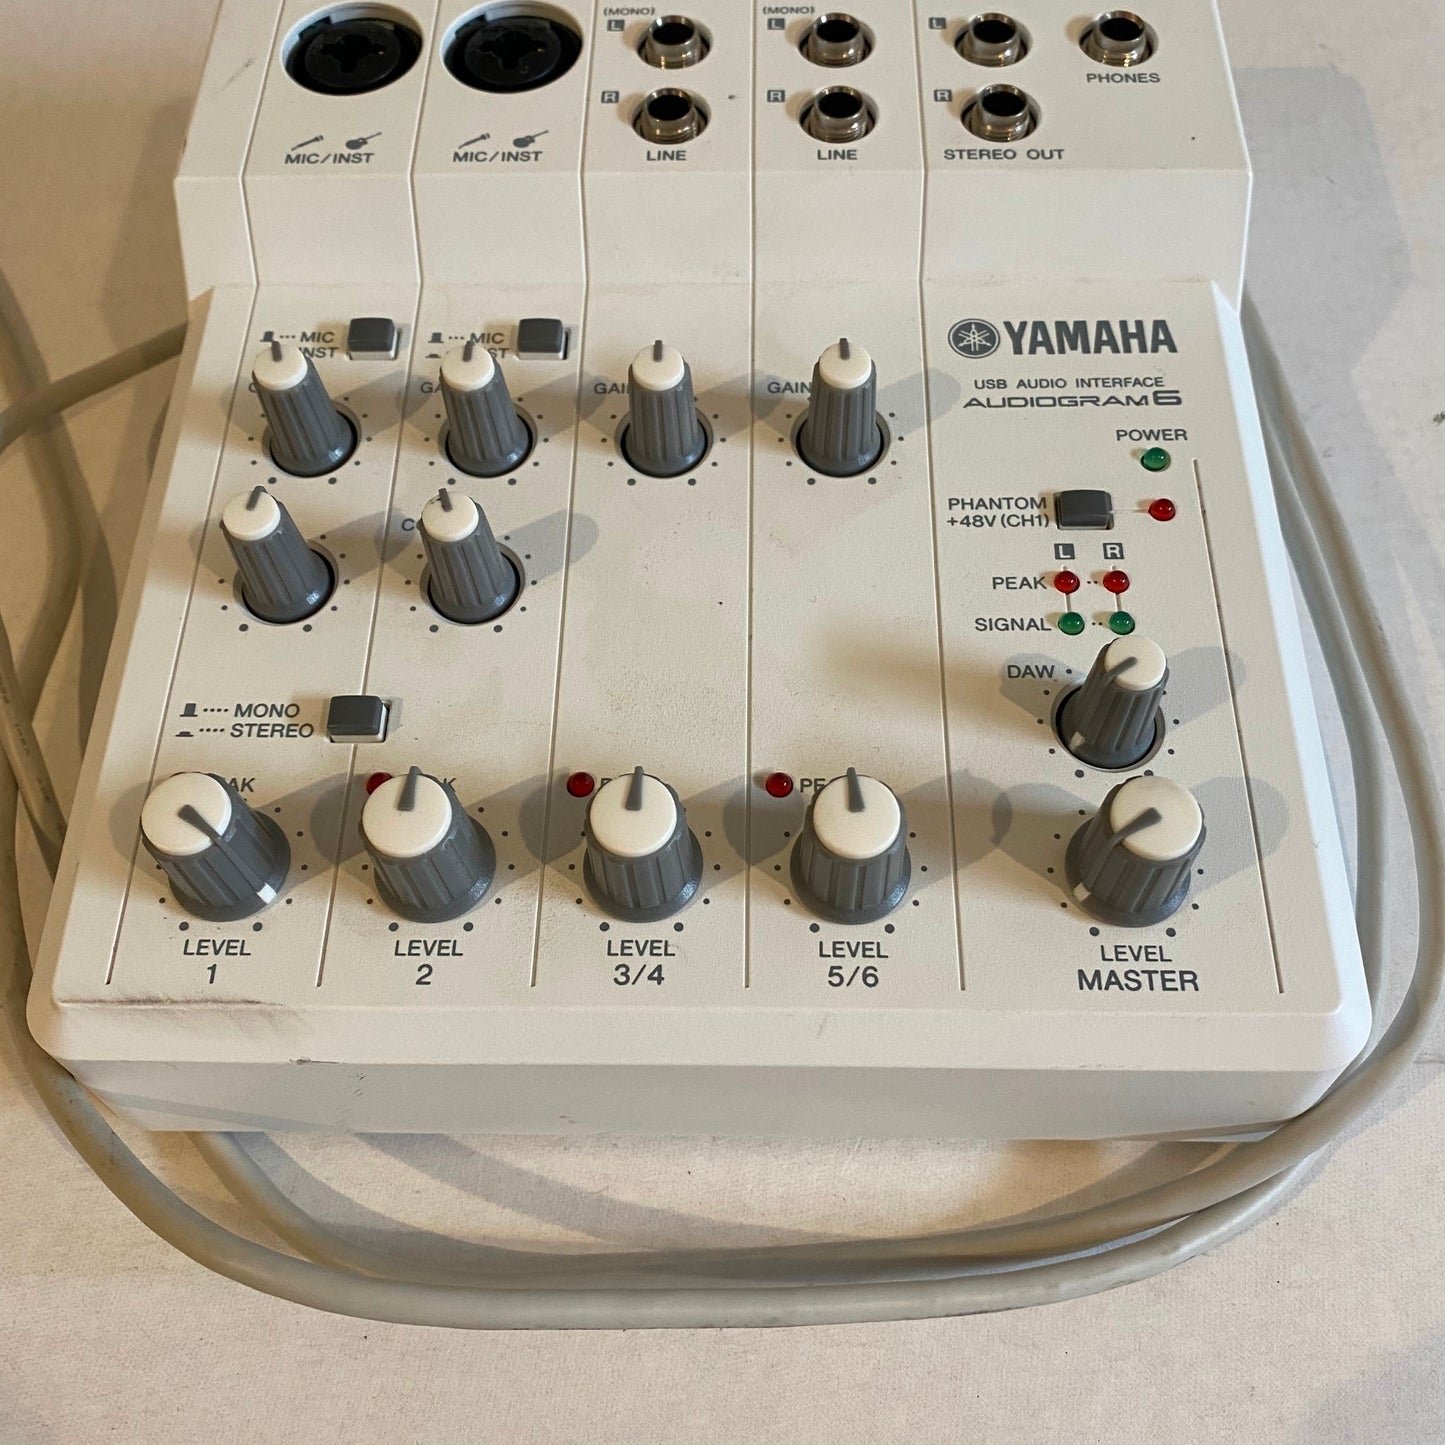 Yamaha Audiogram6 USB Audio Interface Mixer